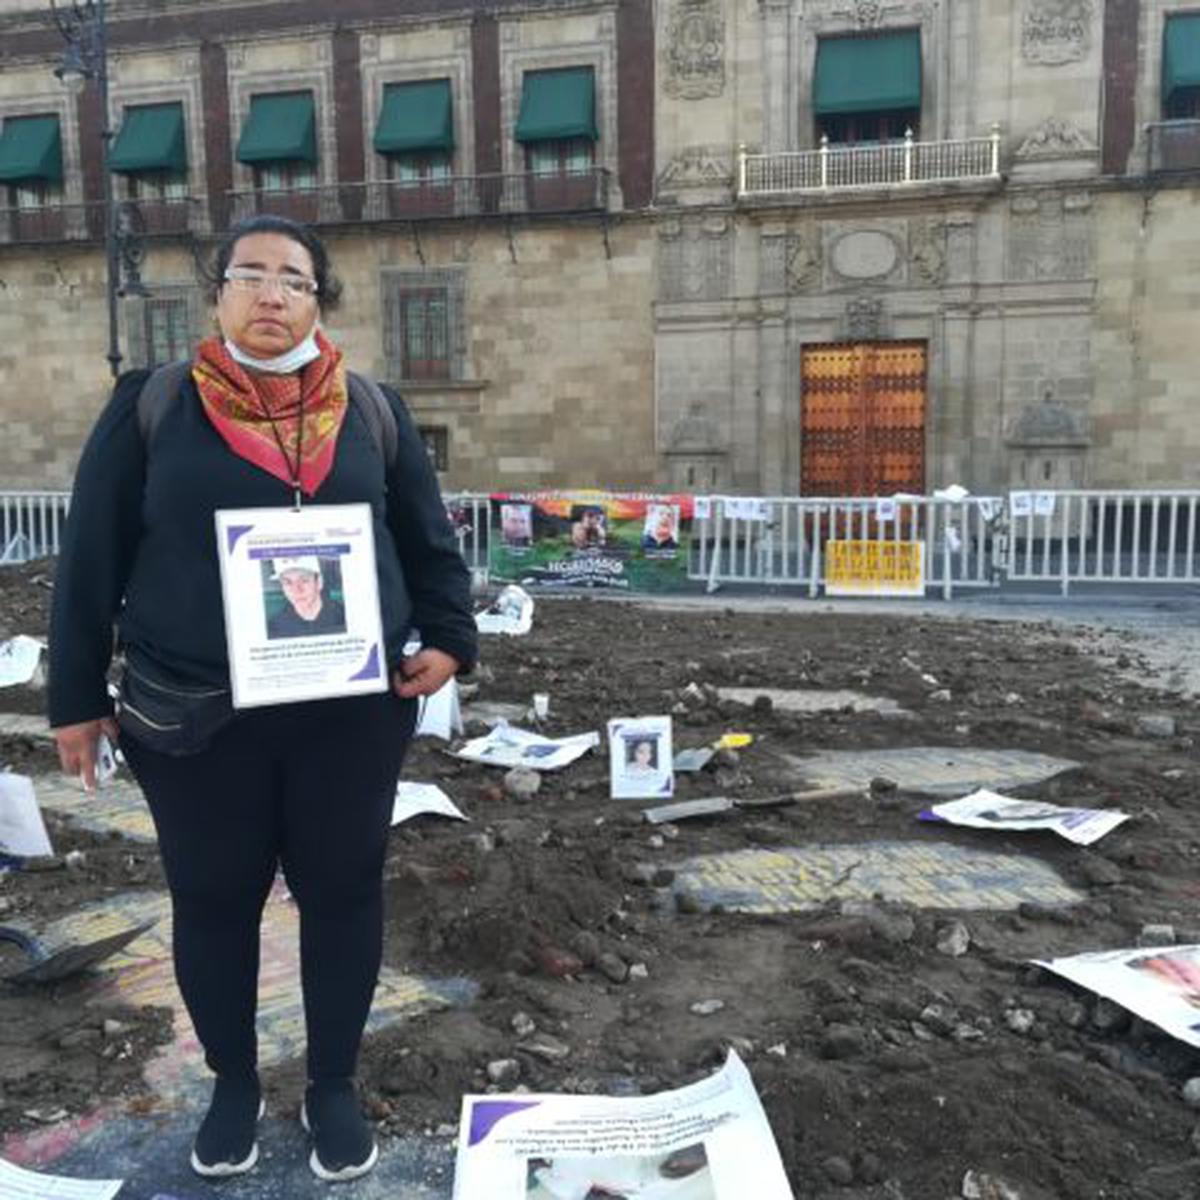  | Madres que buscan a sus hijos desaparecidos en Guanajuato participaron en la protesta pacífica en el Zócalo. Foto: Karime López